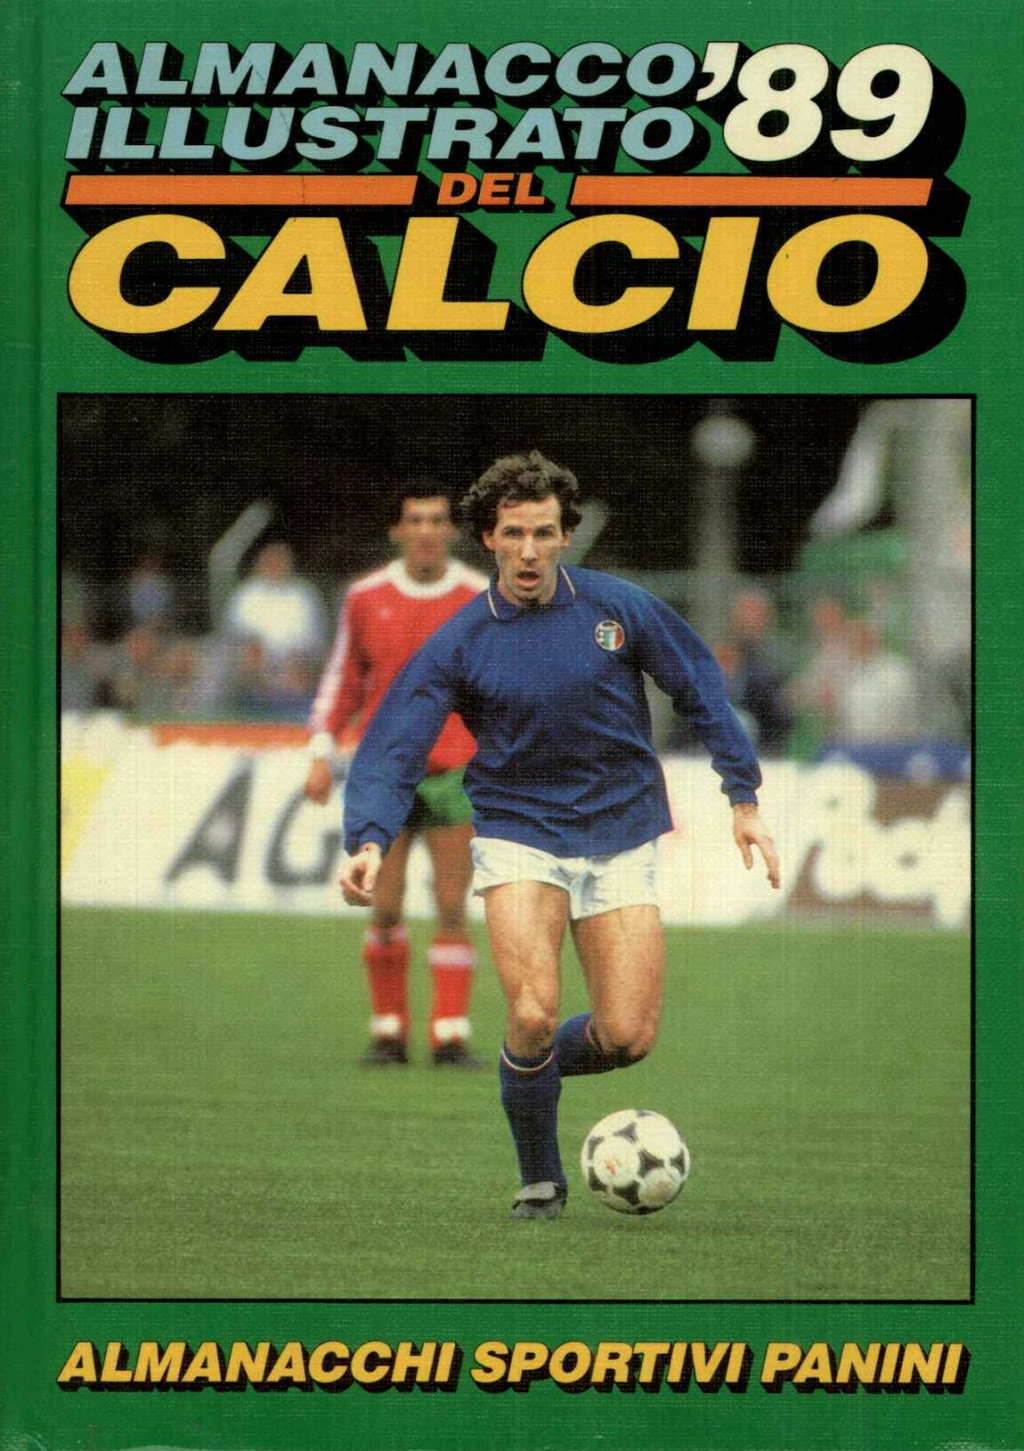 Almanacco illustrato del calcio  1989